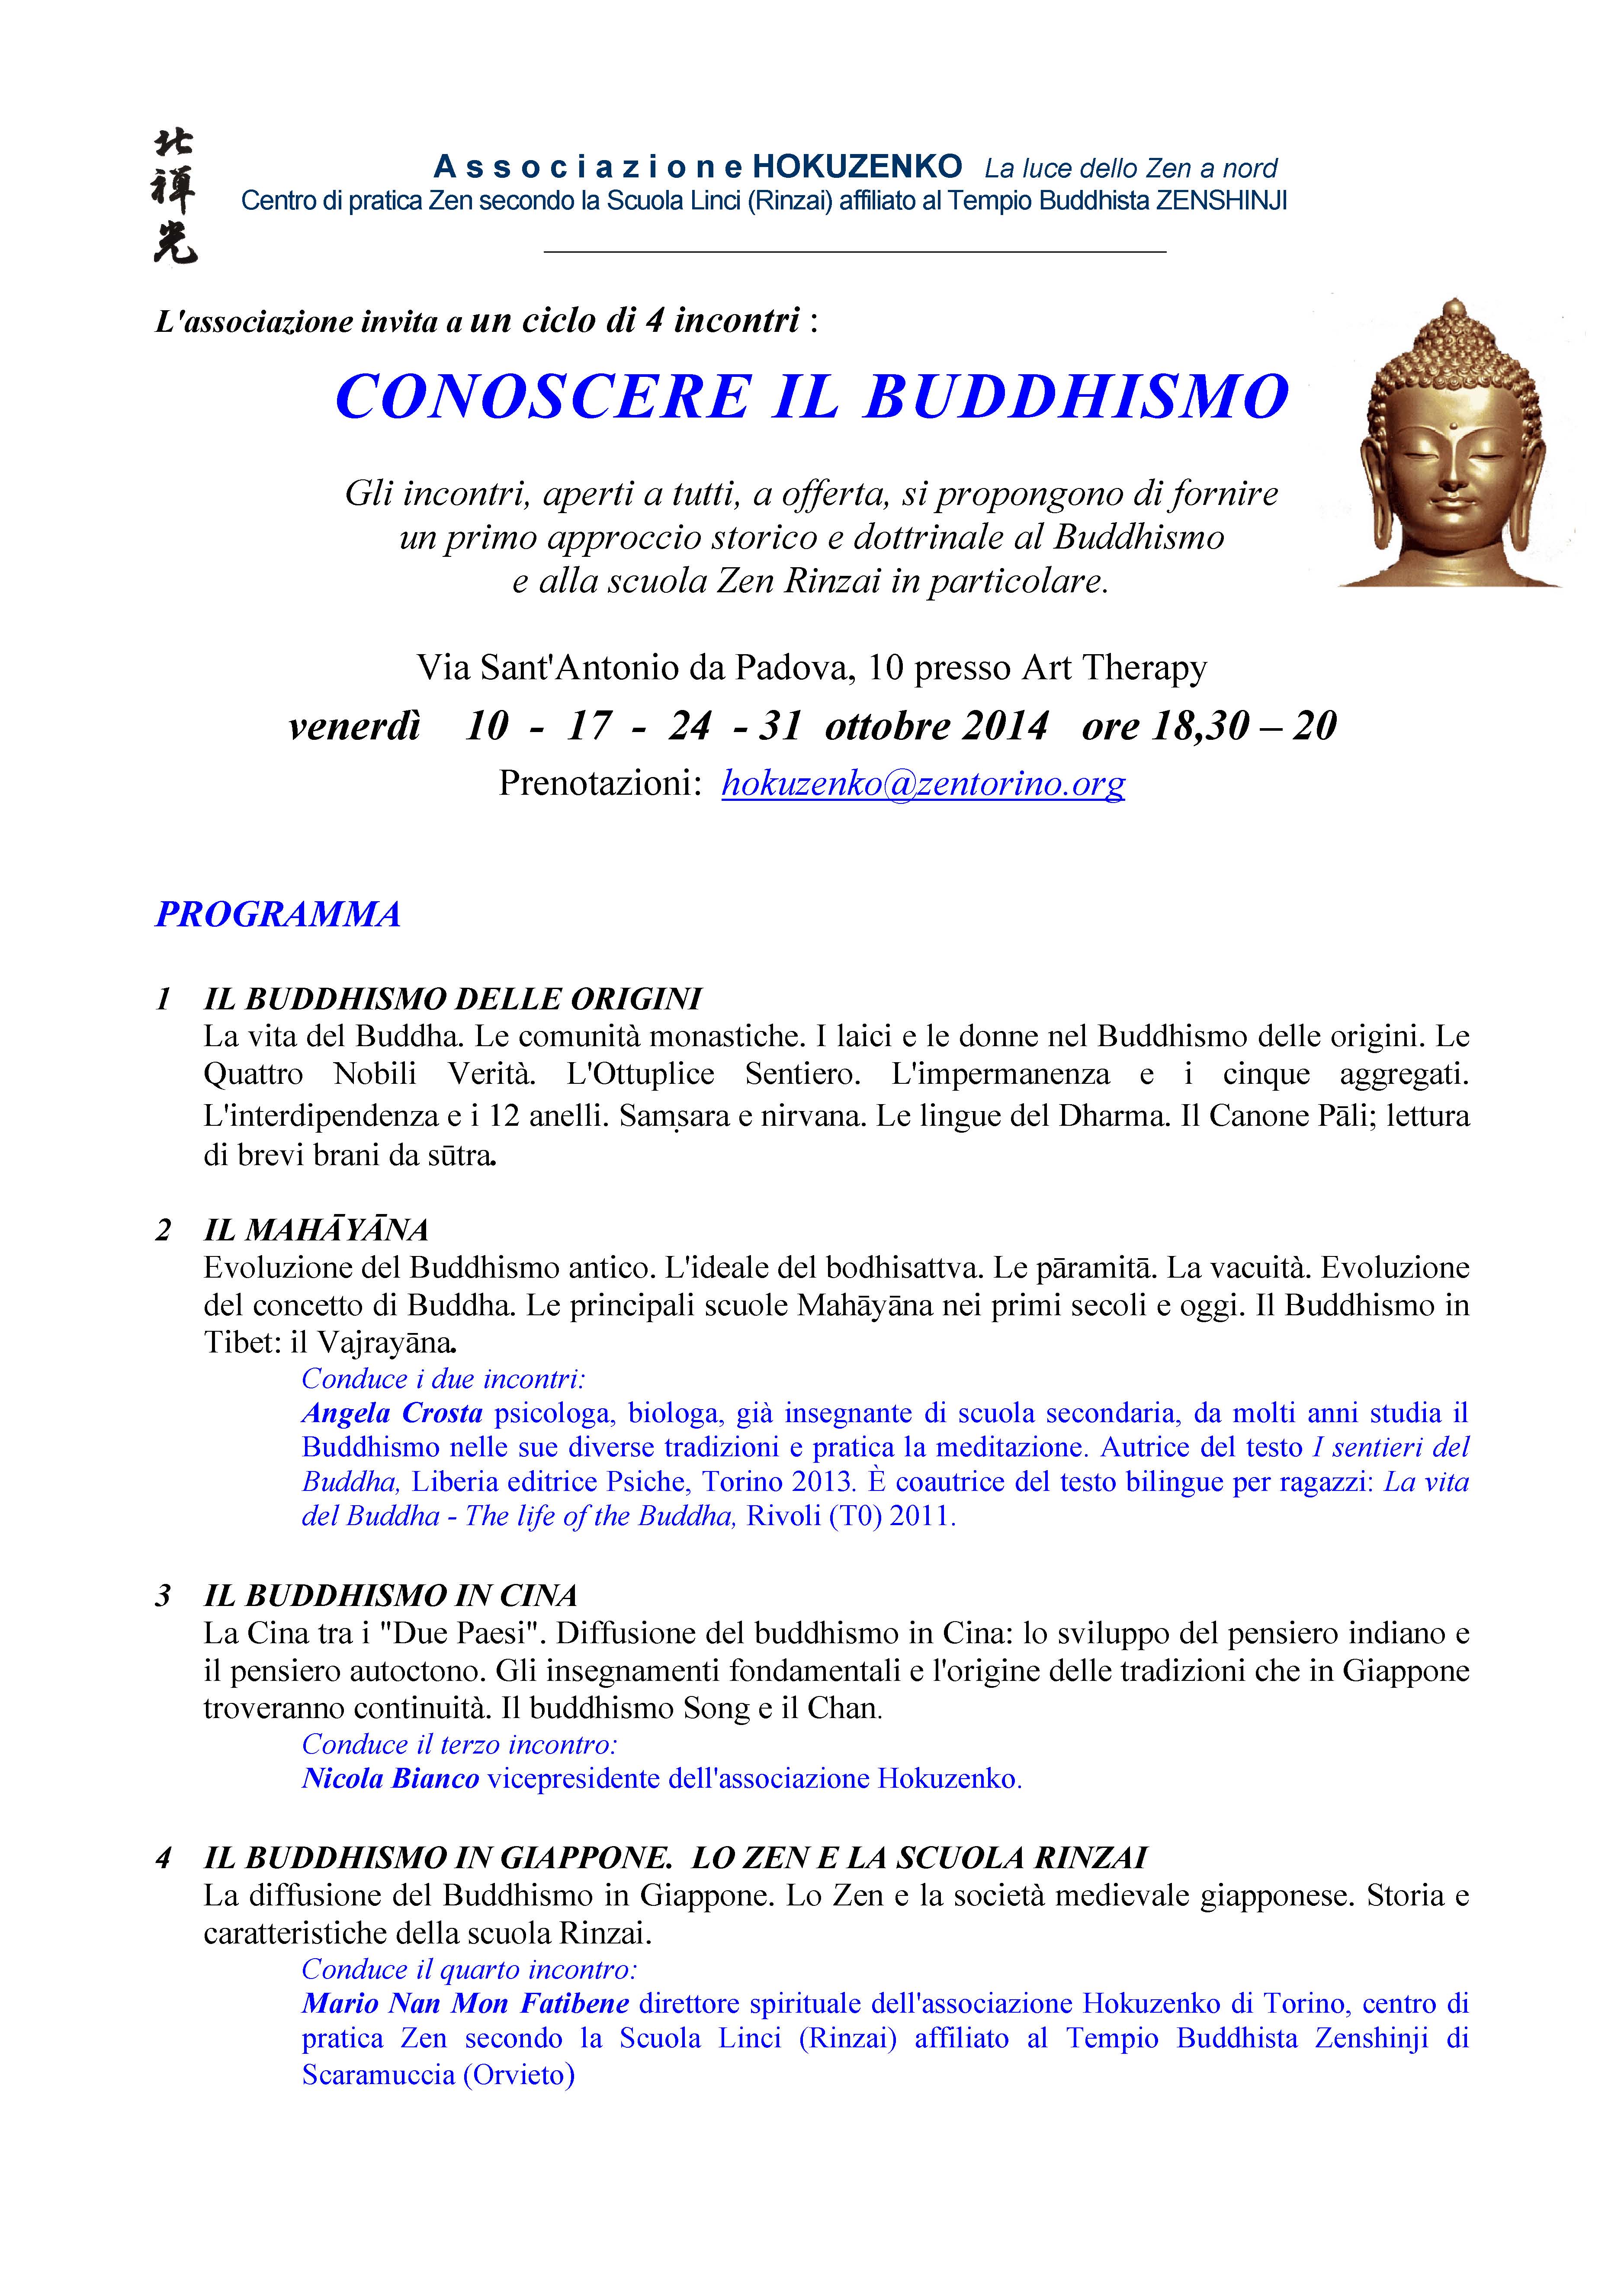 Conoscere il Buddhismo OTTOBRE 2014